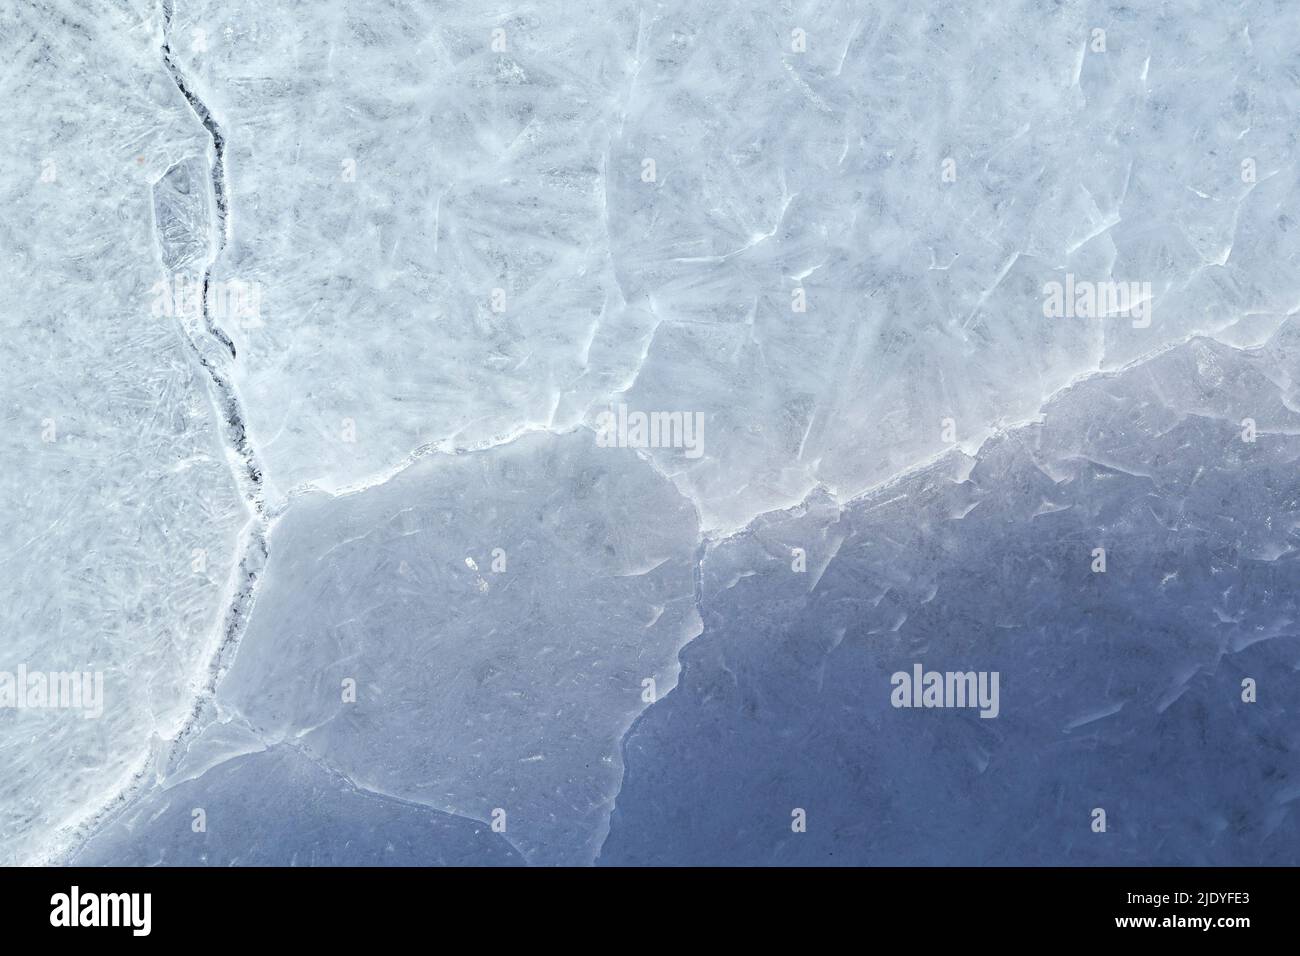 Primer plano de hielo agrietado en un lago congelado en el invierno, visto desde arriba. Fondo de marco completo con textura abstracta. Espacio de copia, vista superior. Foto de stock